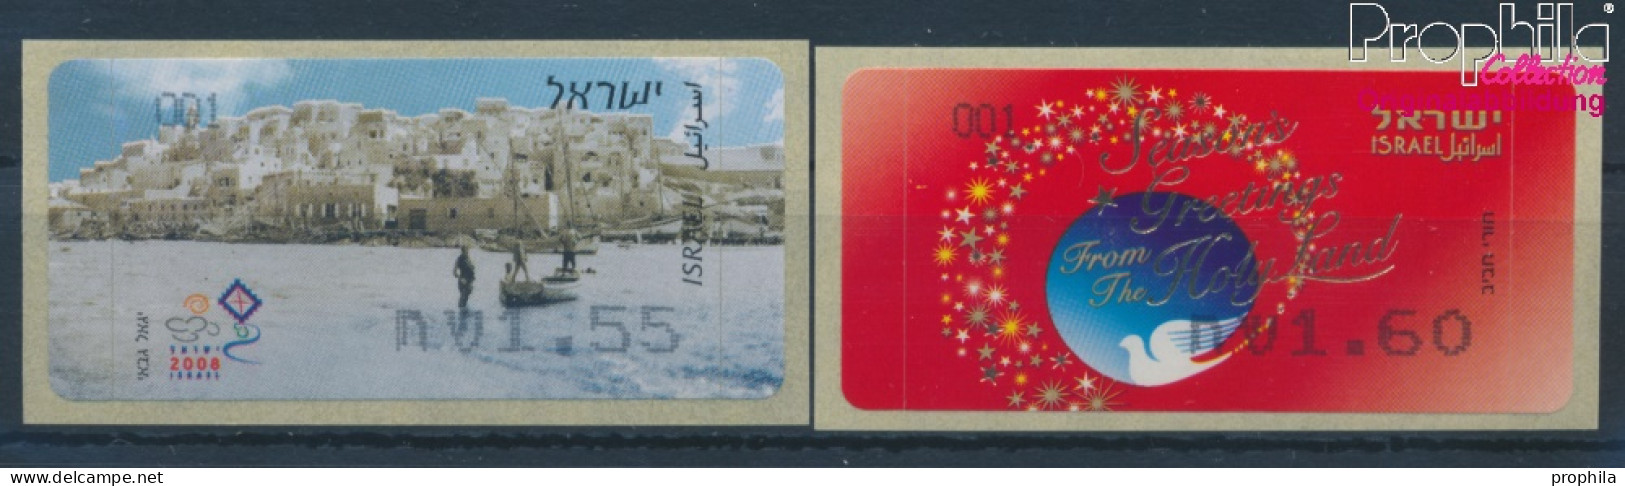 Israel ATM59-ATM60 Postfrisch 2008 Automatenmarken (10369158 - Franking Labels